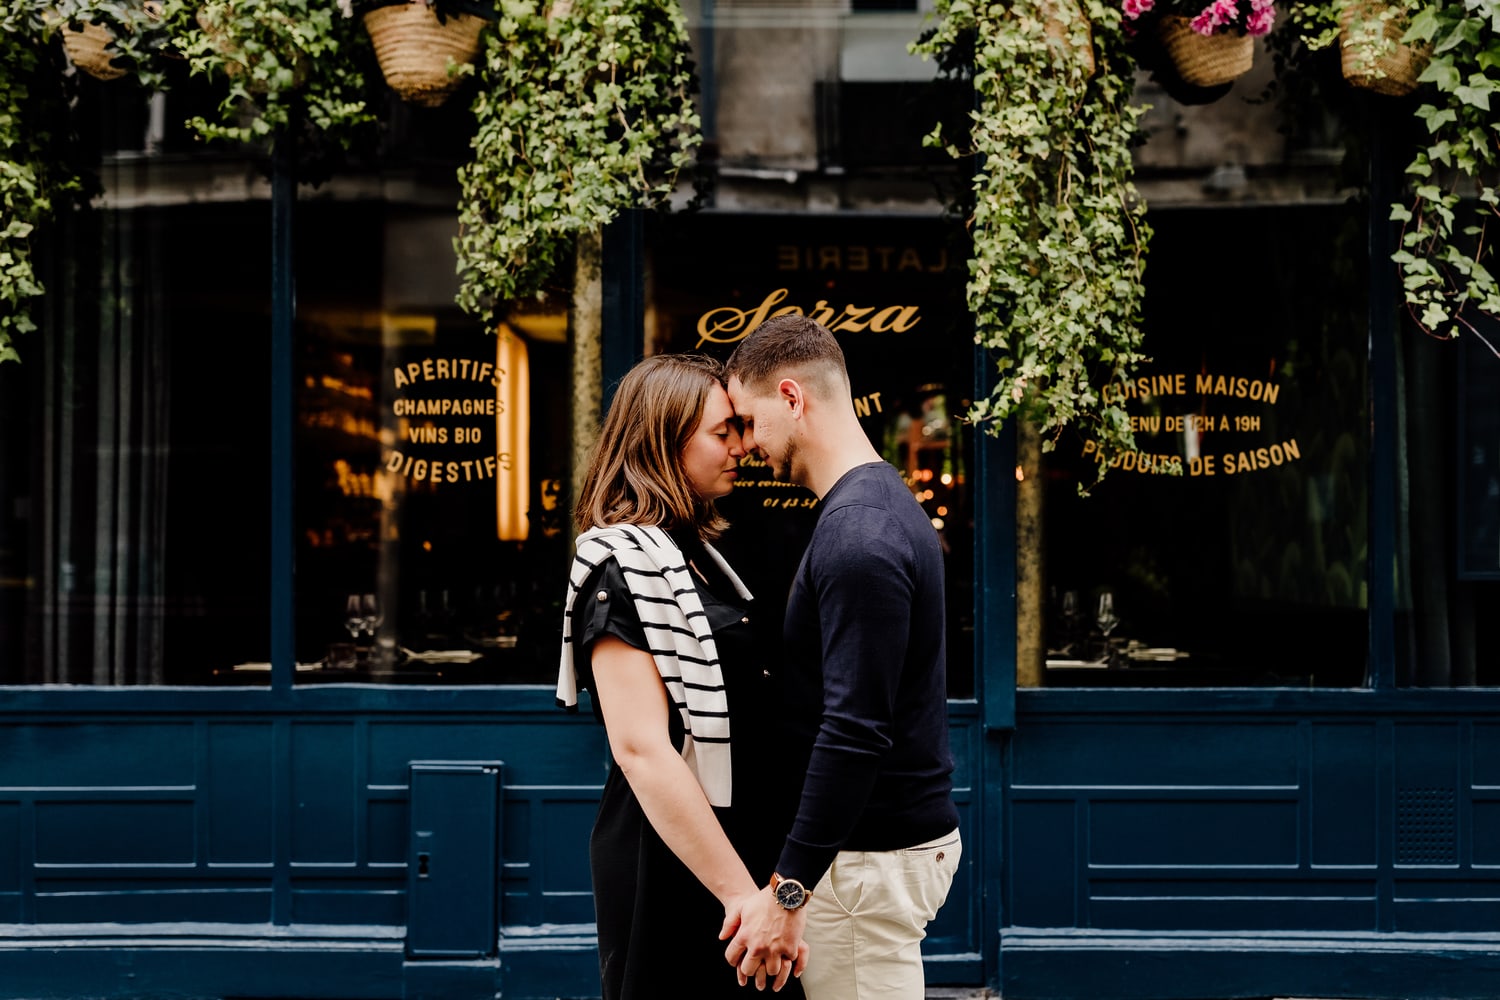 photographie d un couple qui s embrasse devant une vitrine a paris